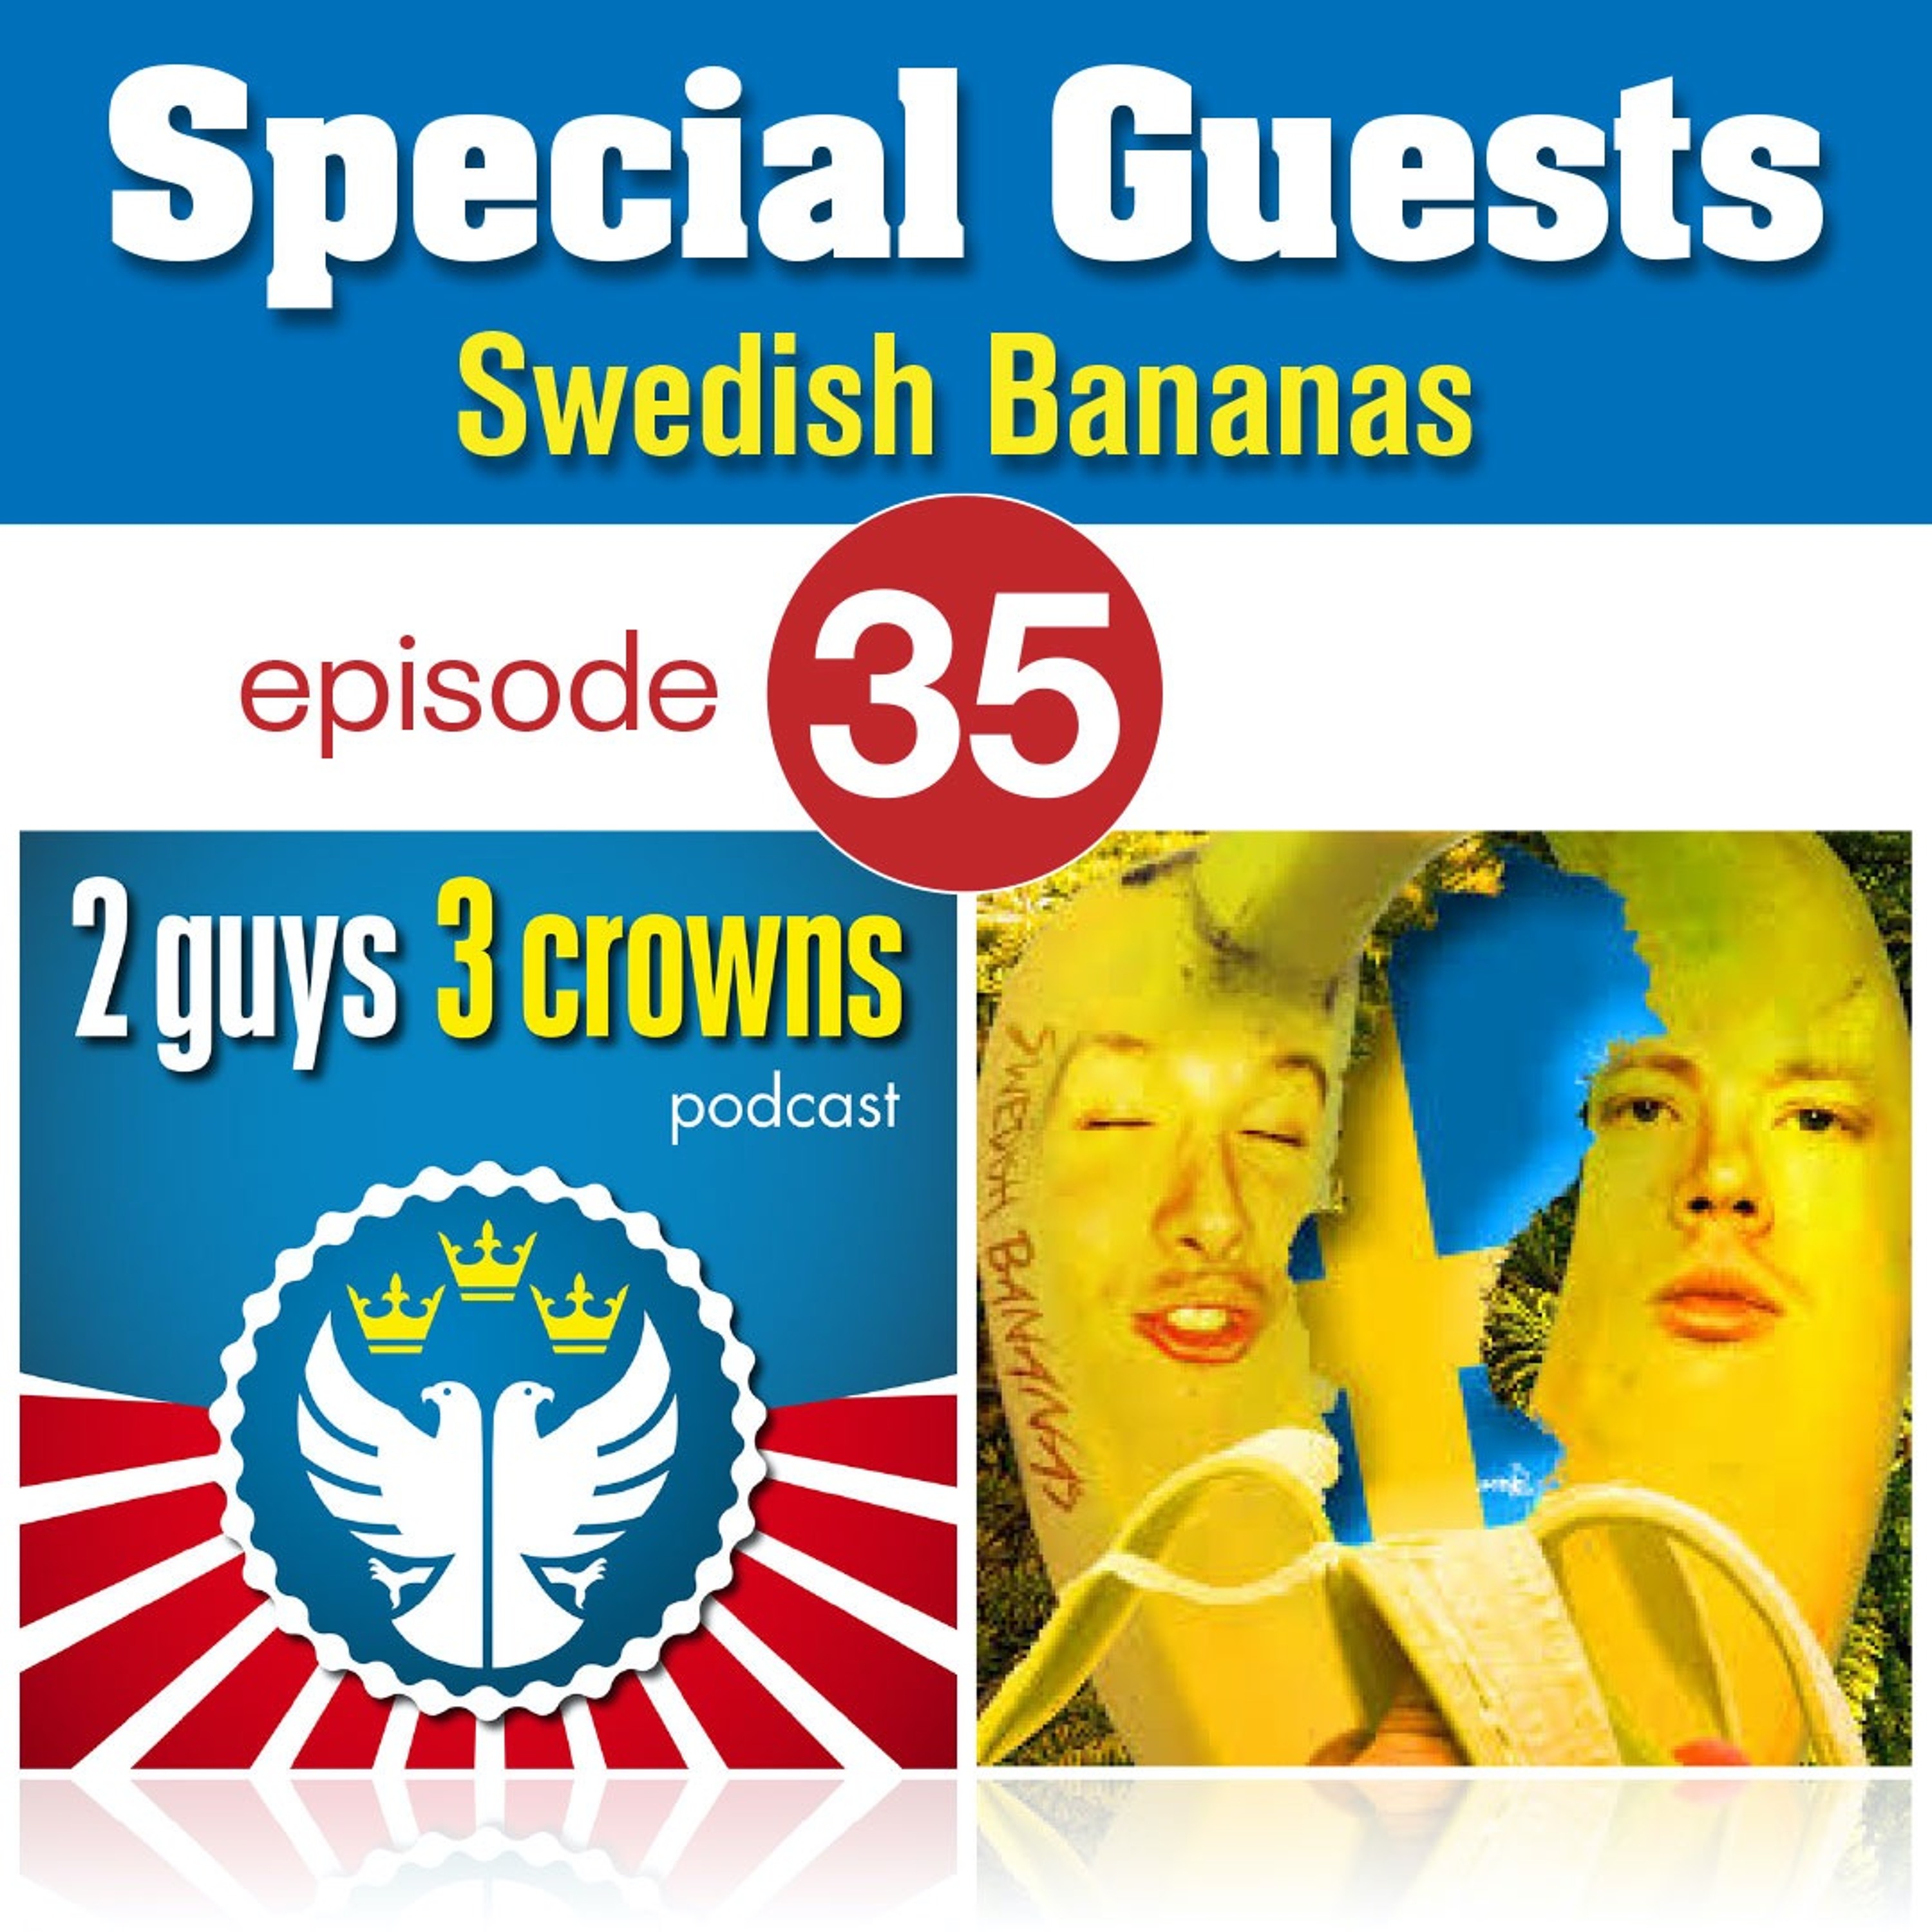 2 Guys, 3 Crowns and Swedish Bananas Image